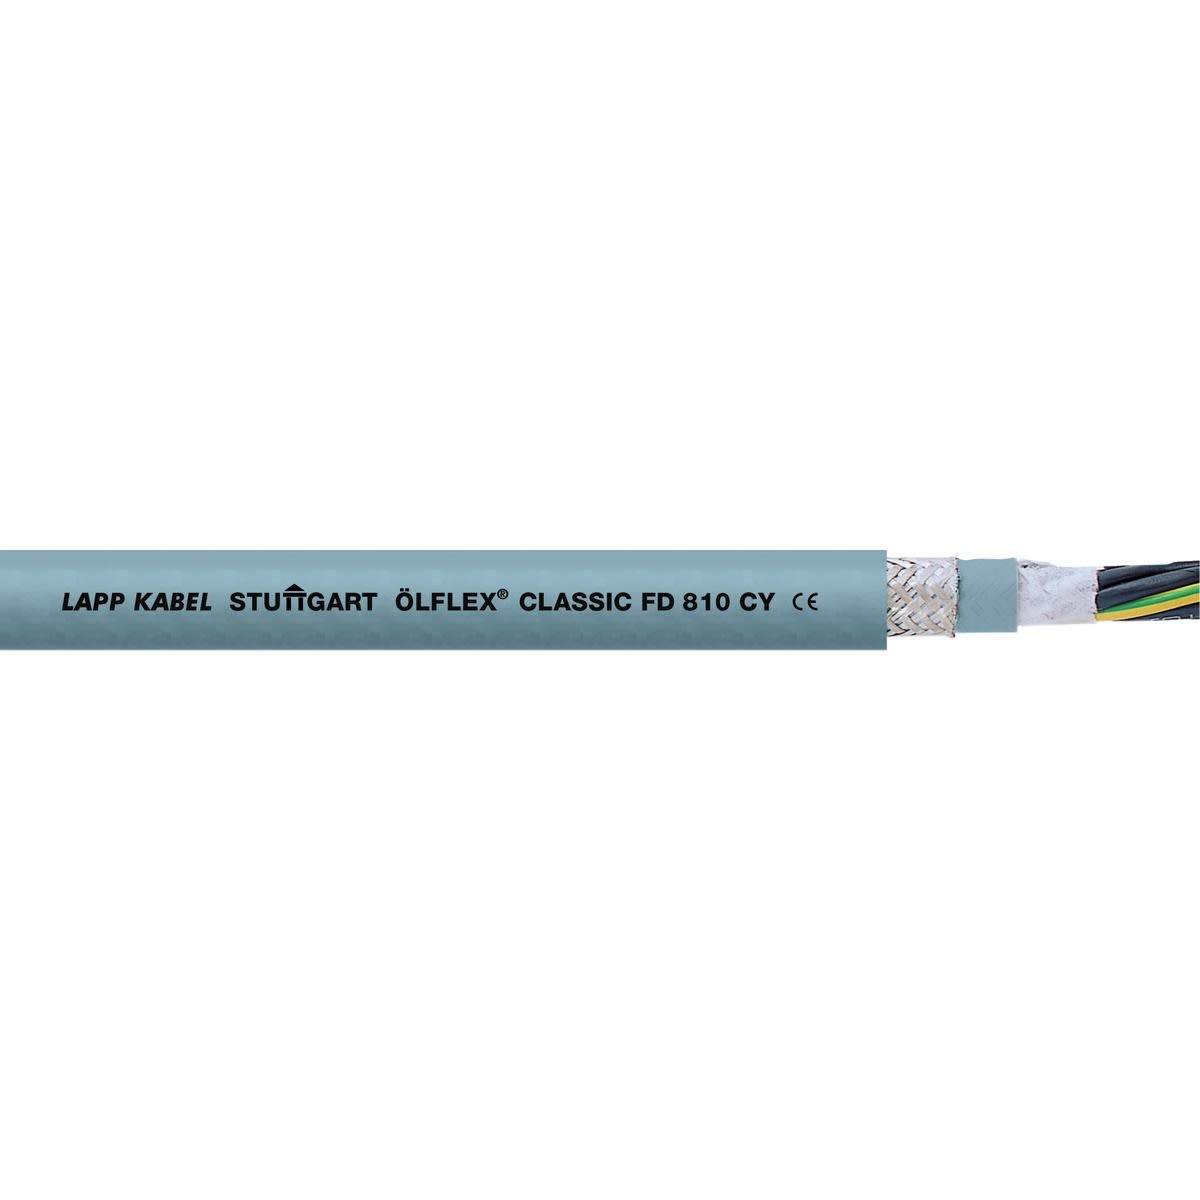 Lapp - ÖLFLEX CLASSIC FD 810 CY 16G1,5